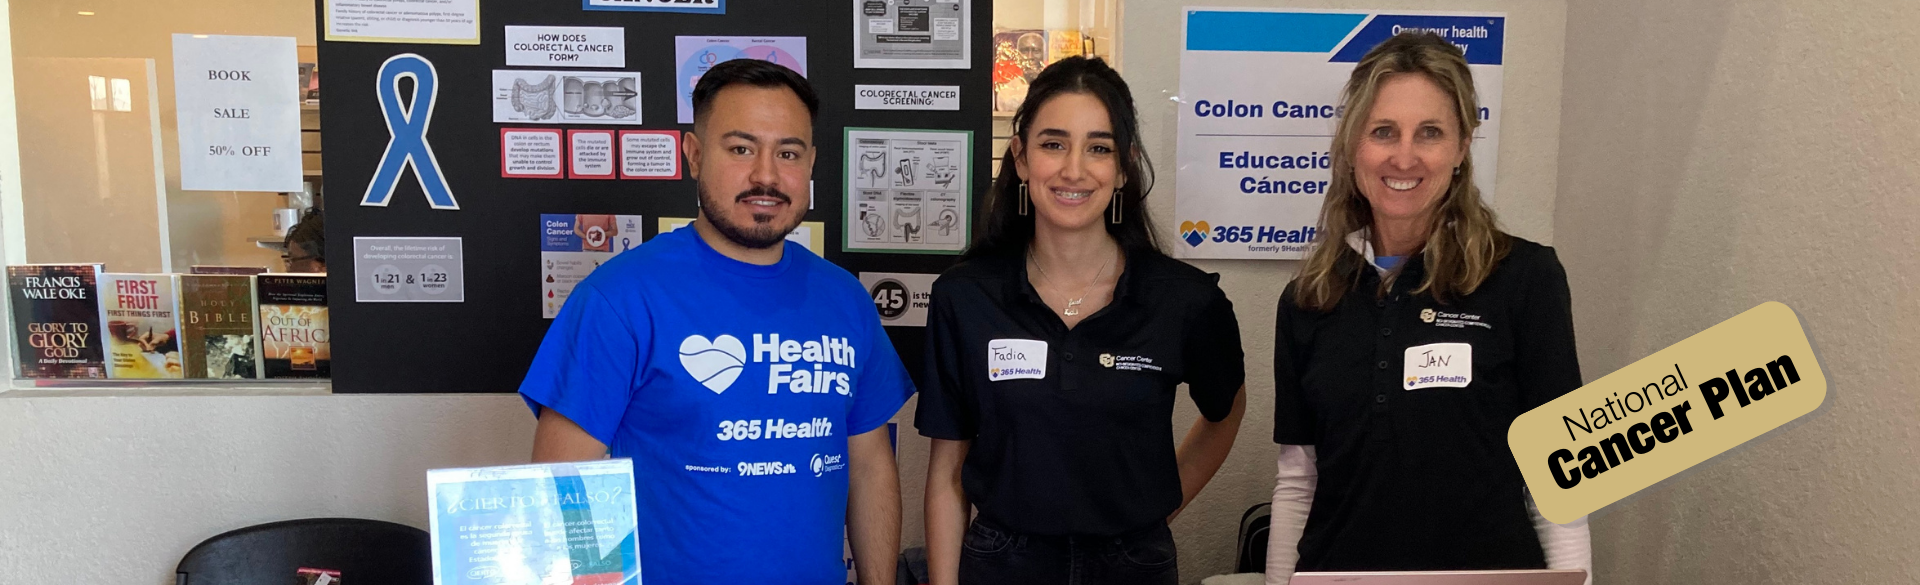 health fair volunteers